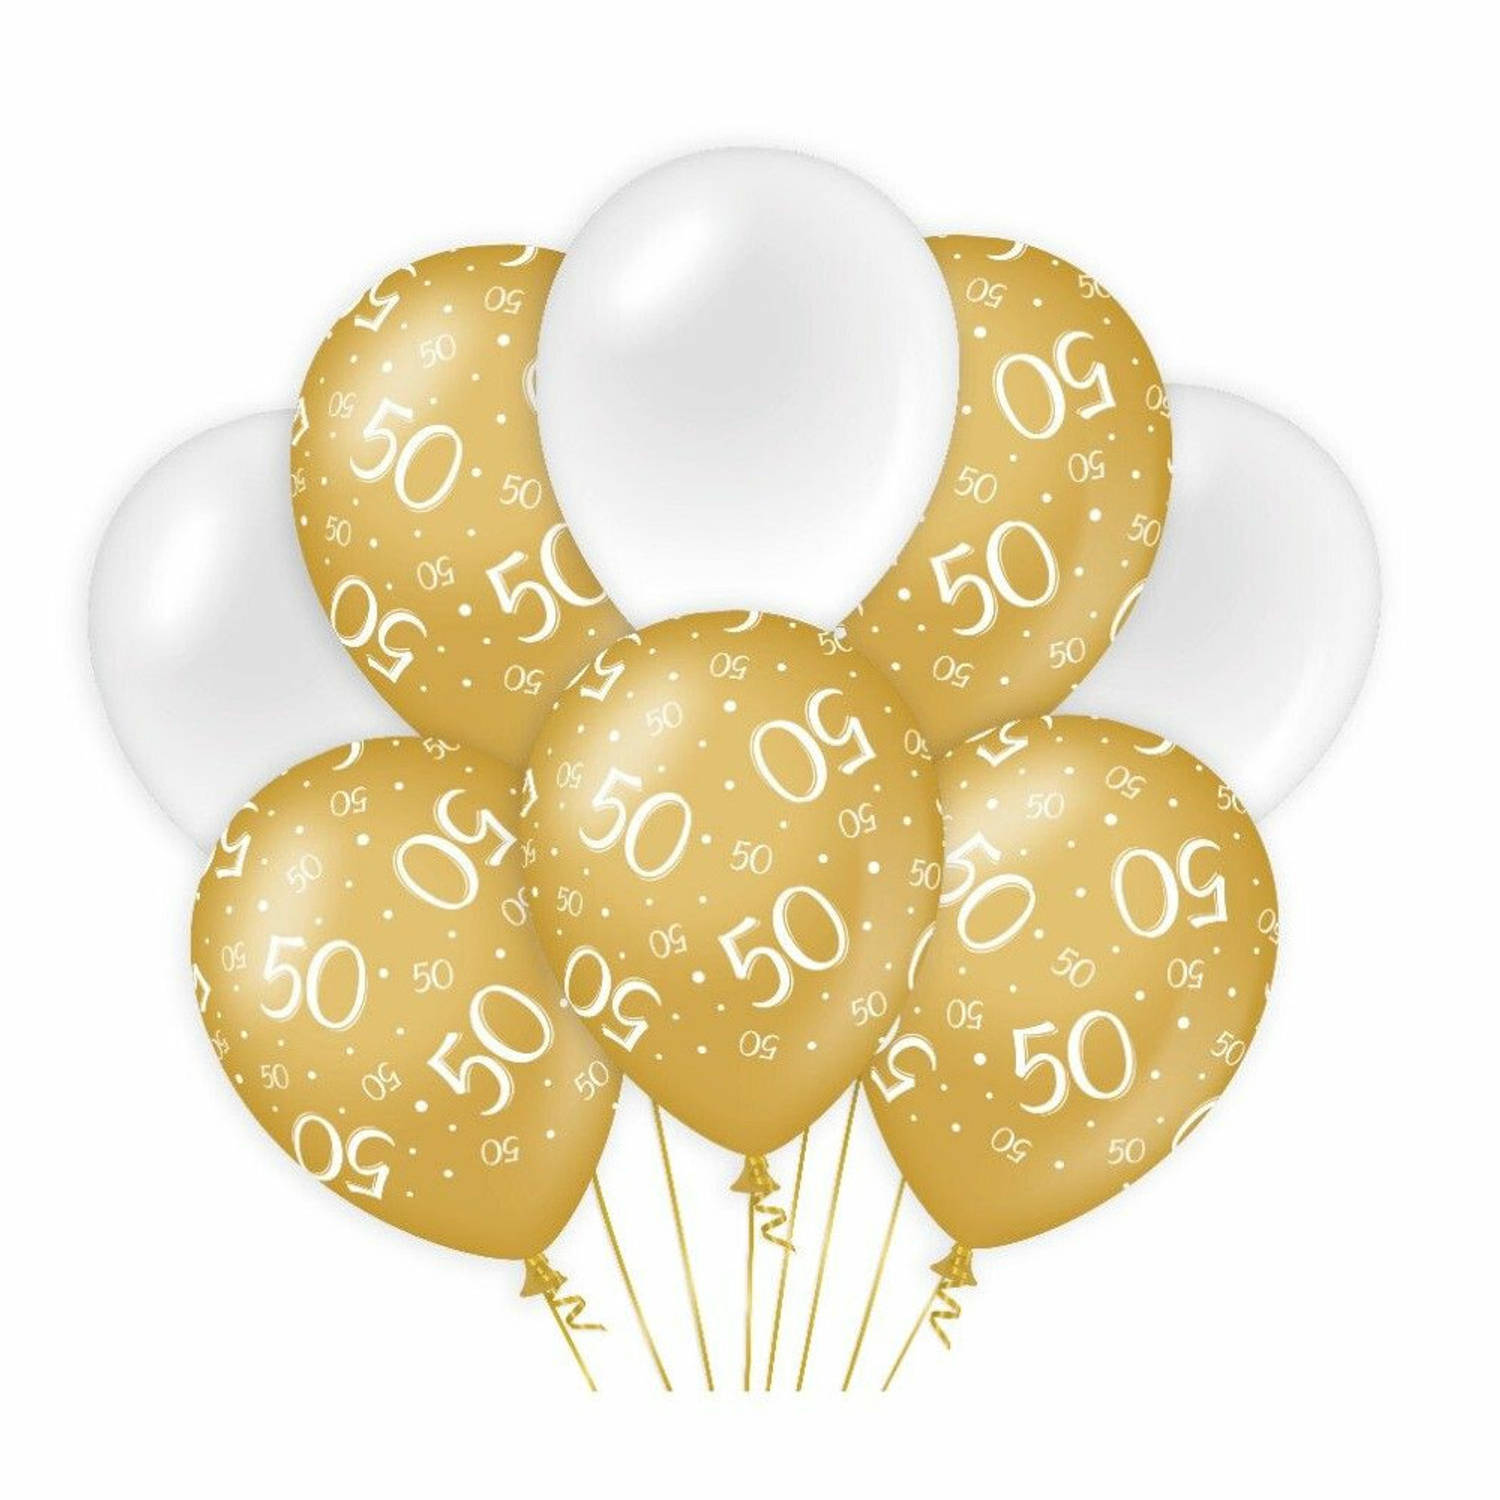 Paperdreams 50 jaar leeftijd thema Ballonnen - 24x - goud/wit - Verjaardag feestartikelen - Ballonnen